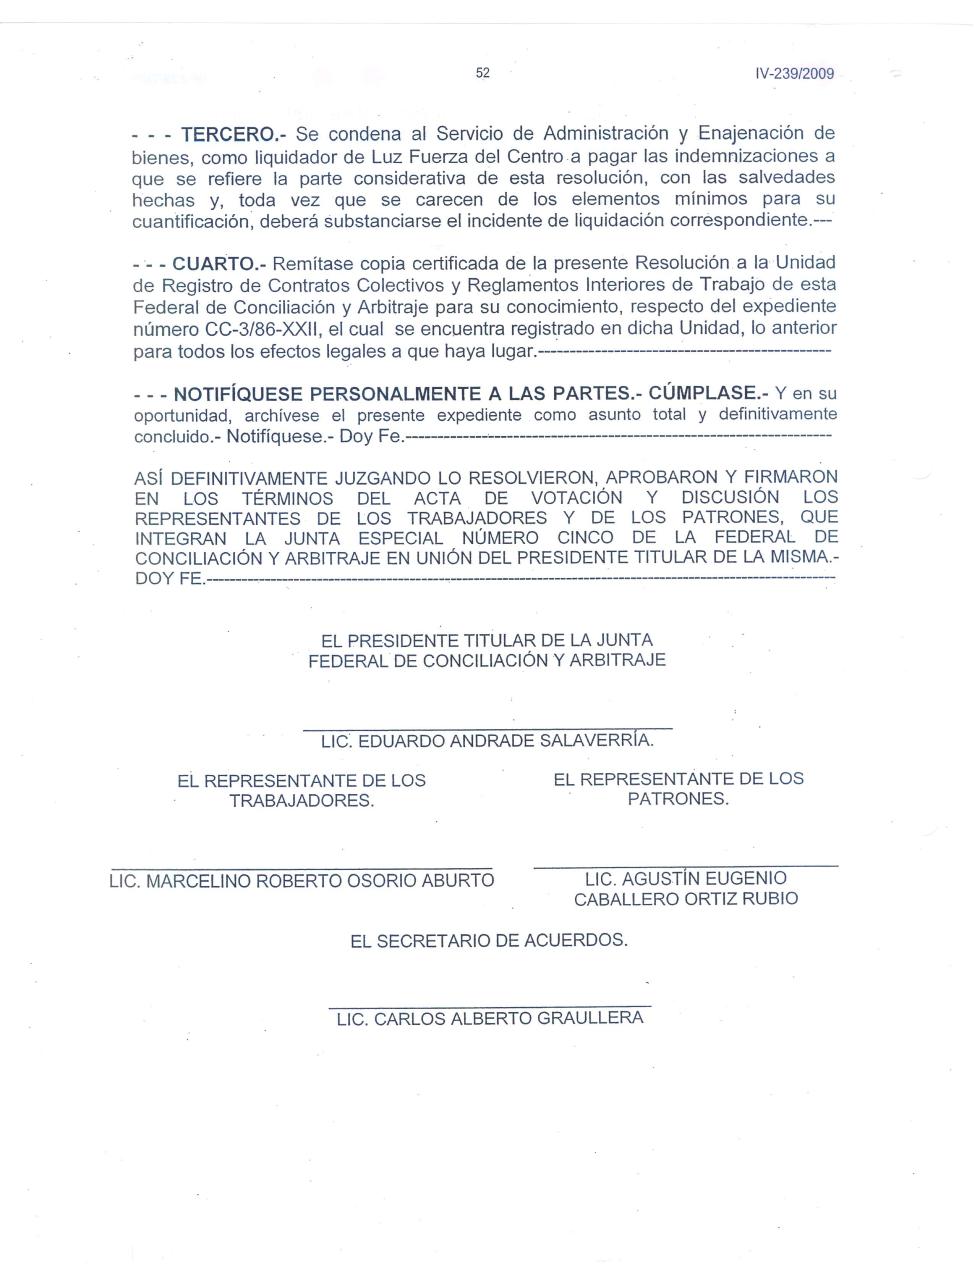 Vista previa del archivo PDF laudo-terminacion-relacion-obrero-patronales.pdf